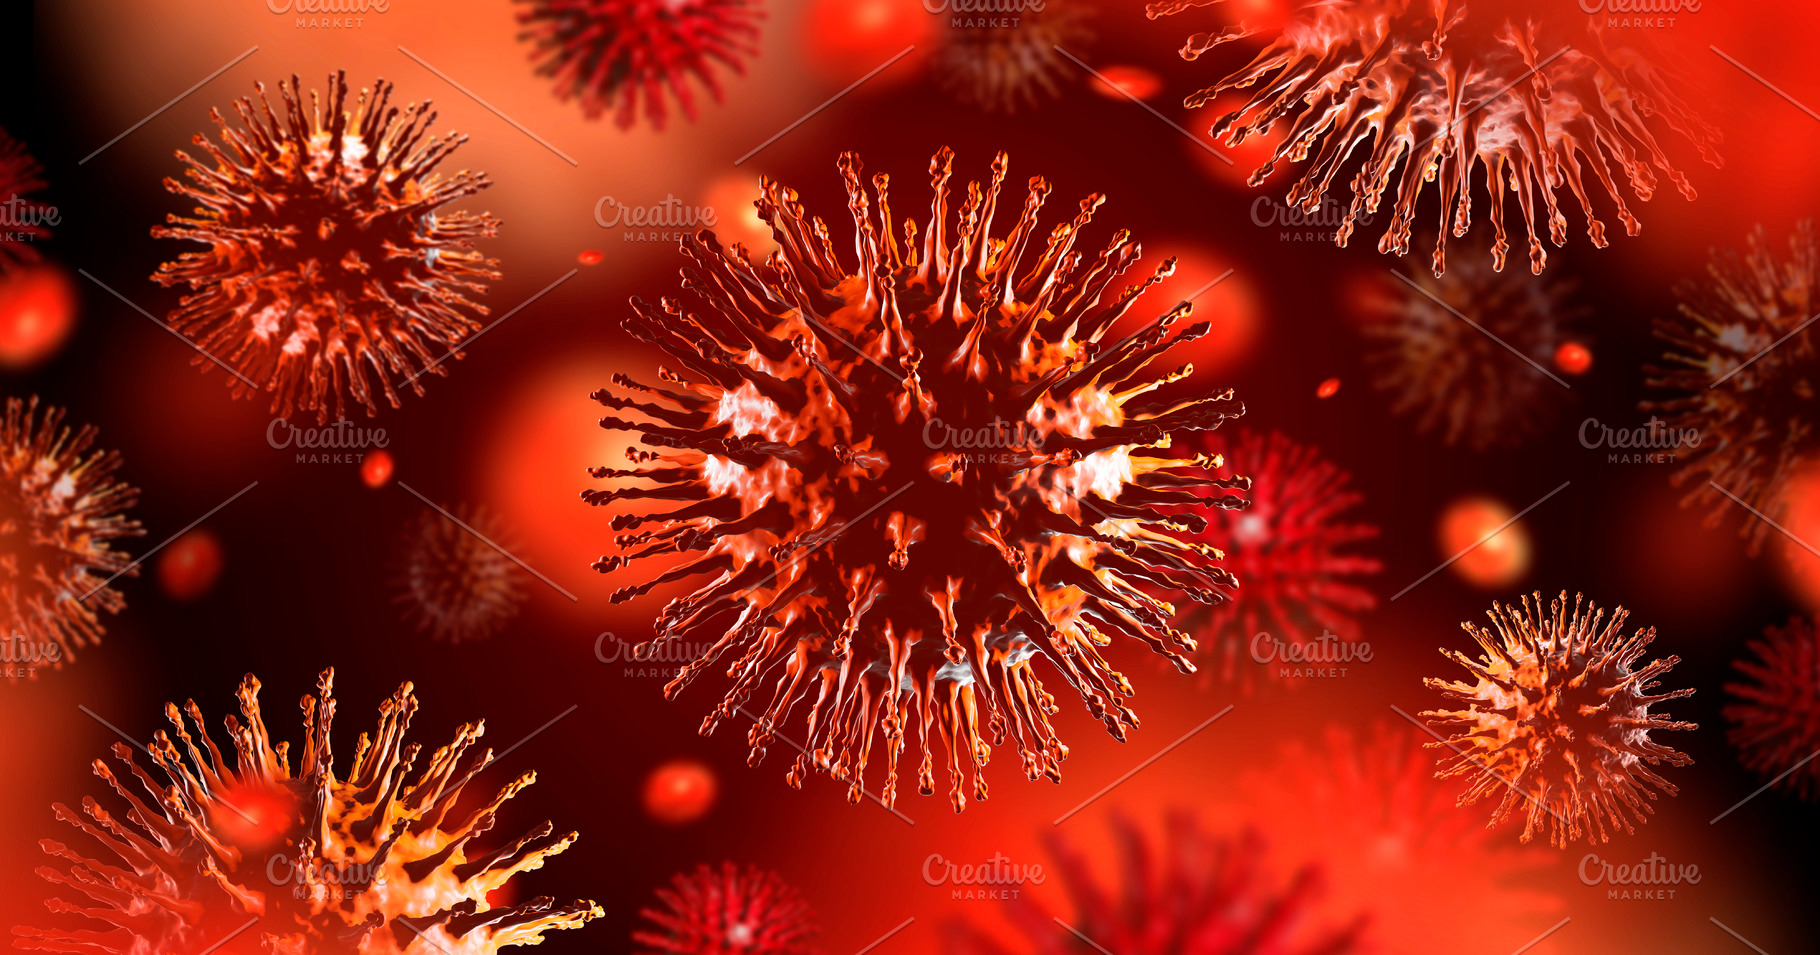 Coronavirus outbreak background | Custom-Designed ...